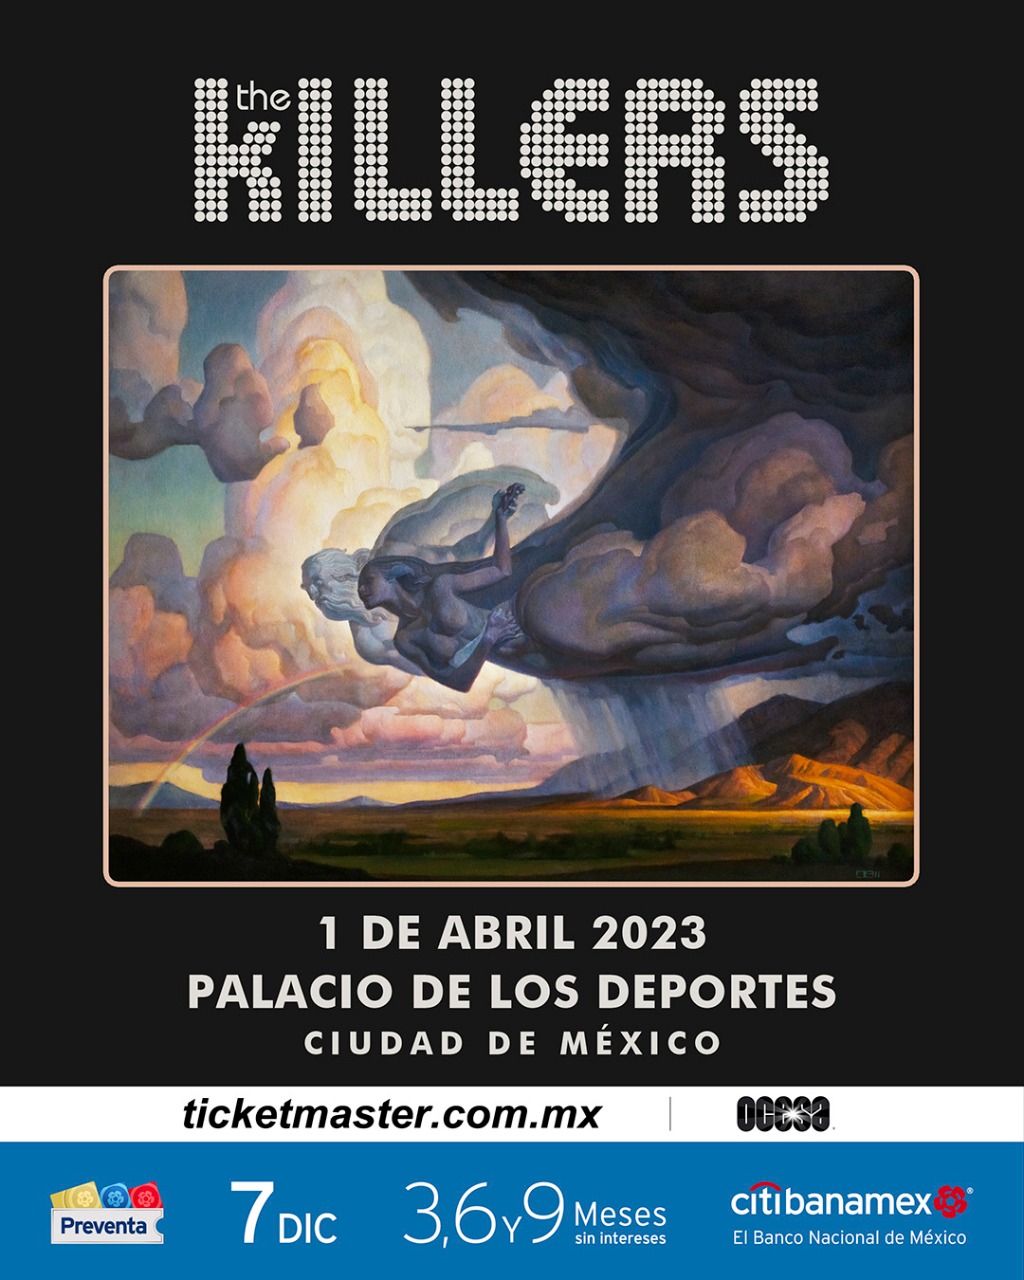 ¡The Killers regresa a México en 2023! 6